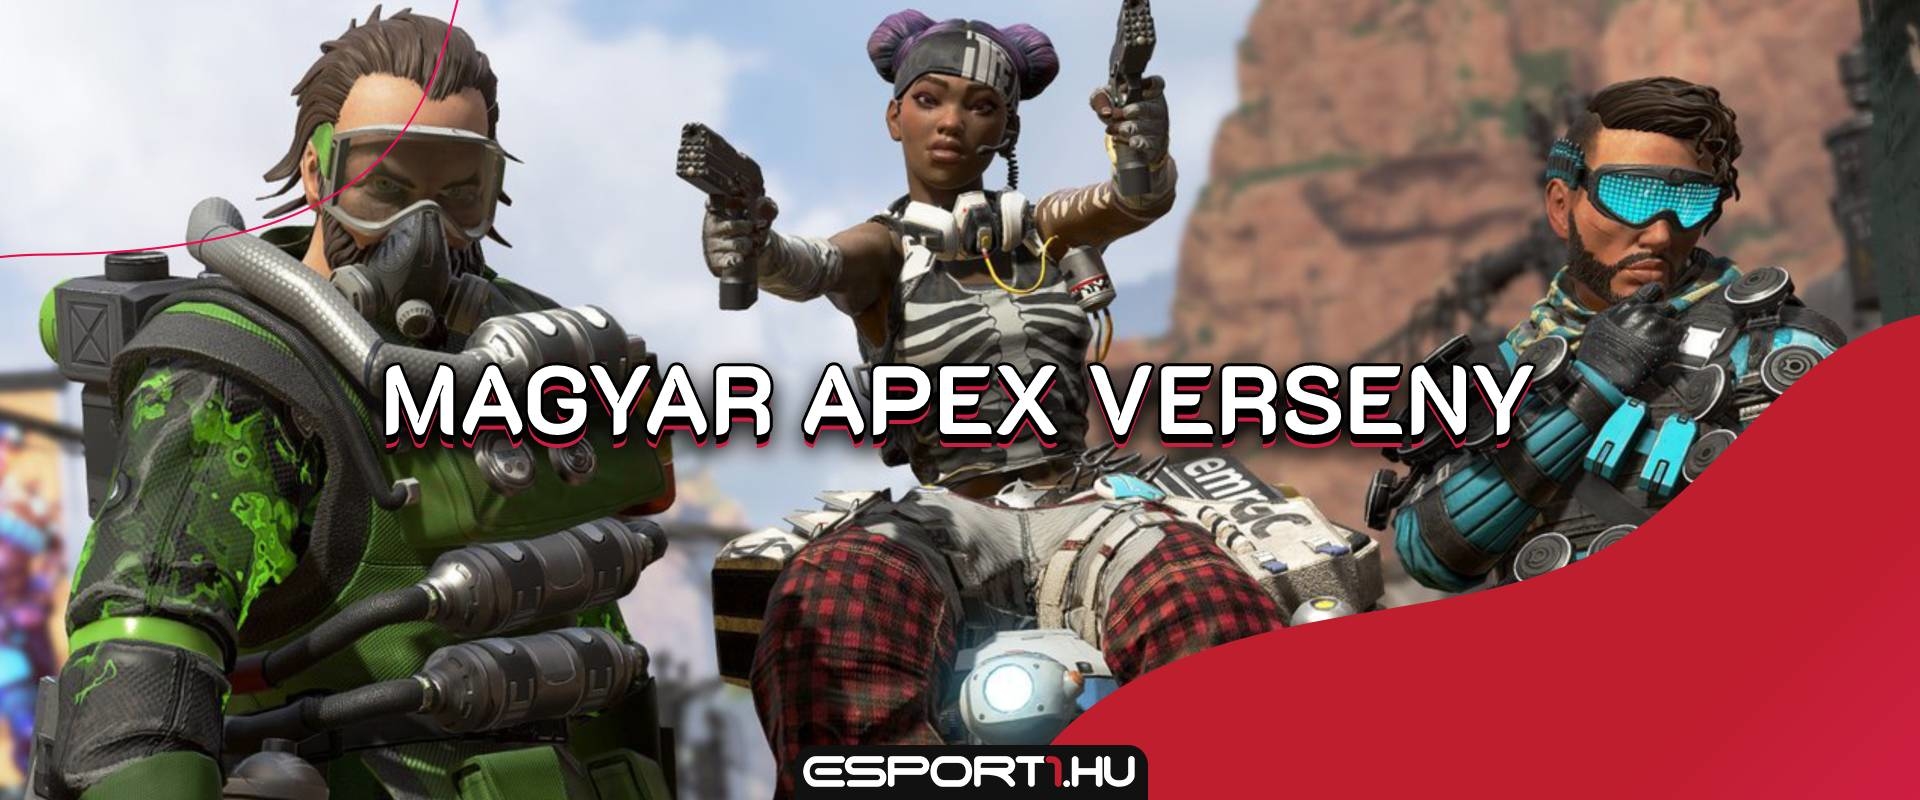 Hétvégén érkezik a PlayIT Apex Legends versenye, mutatjuk az indulókat!